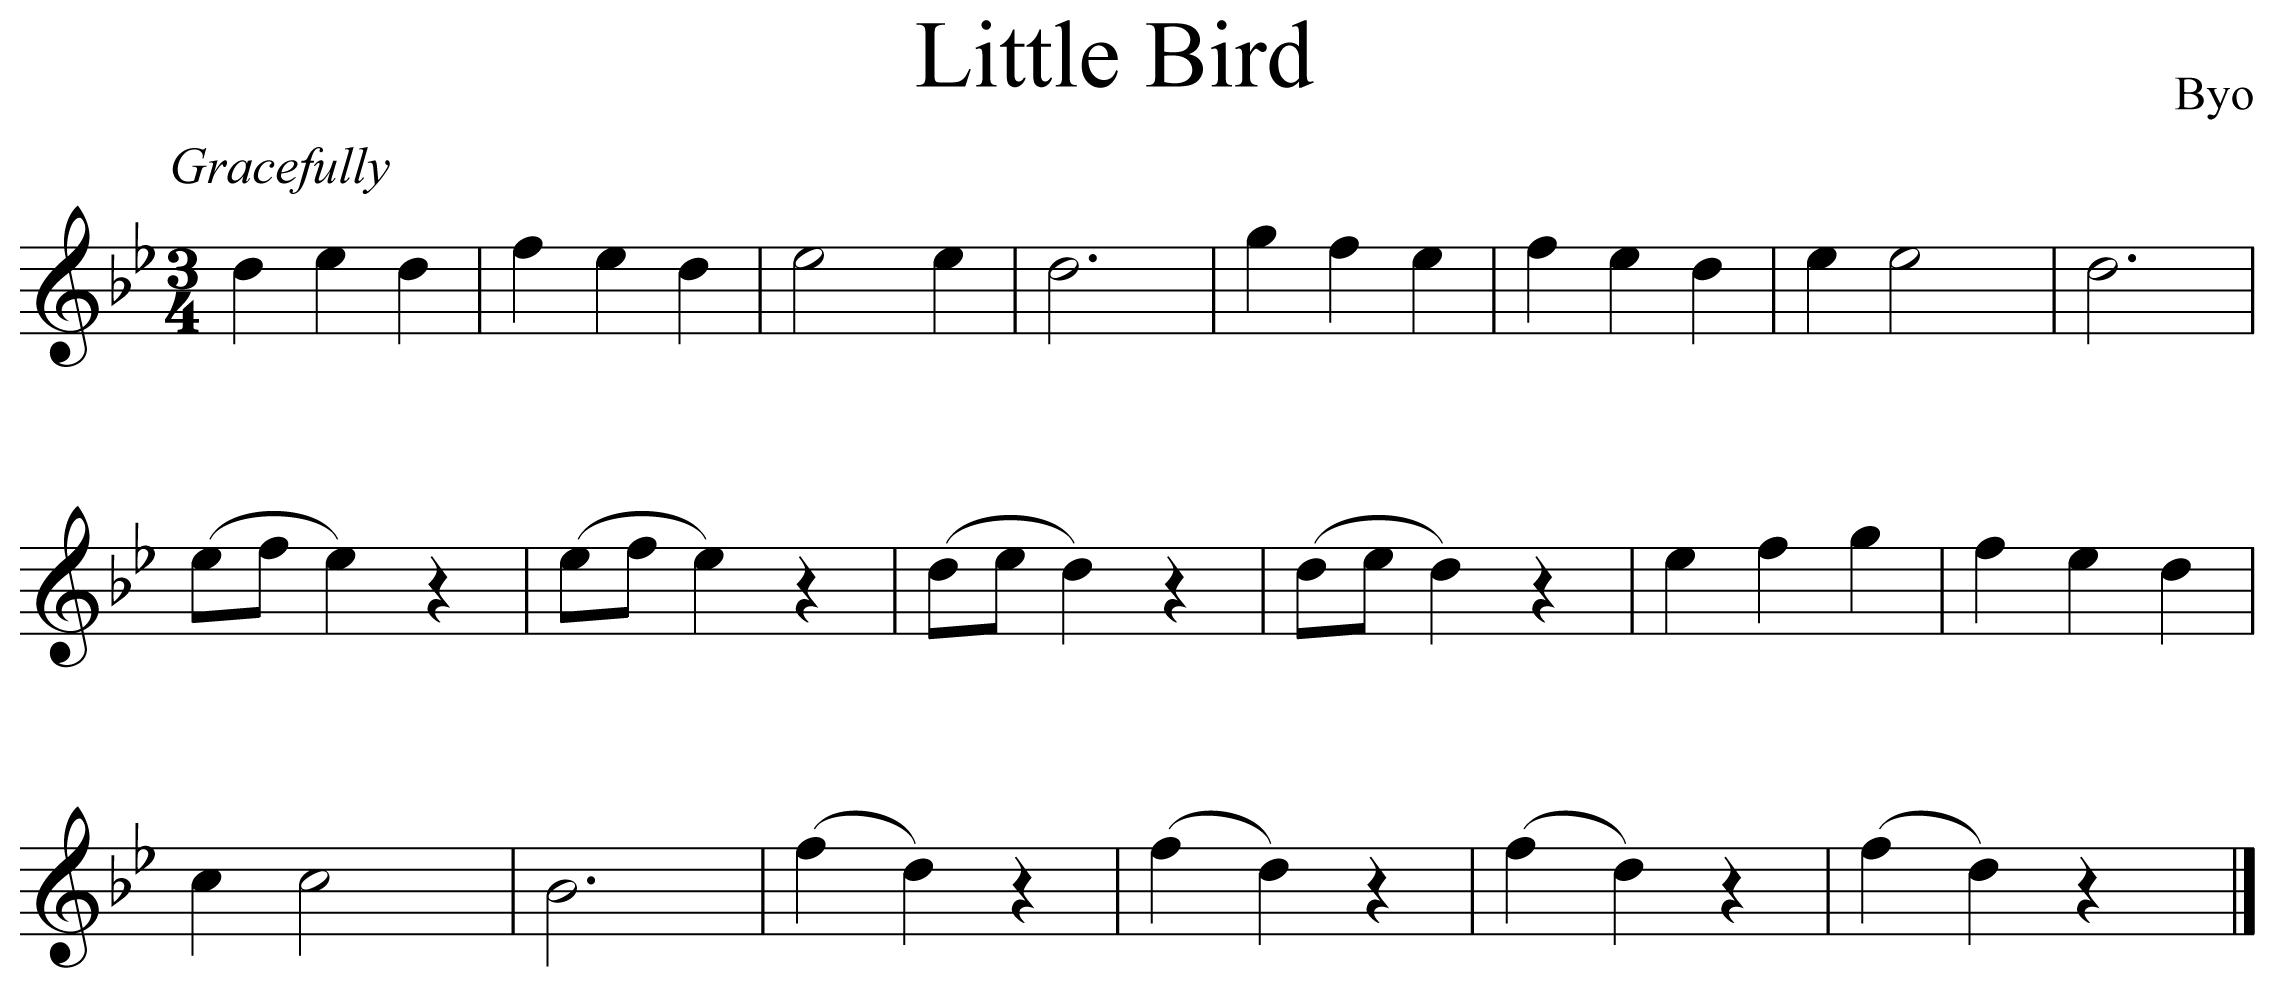 Little Bird Notation Flute